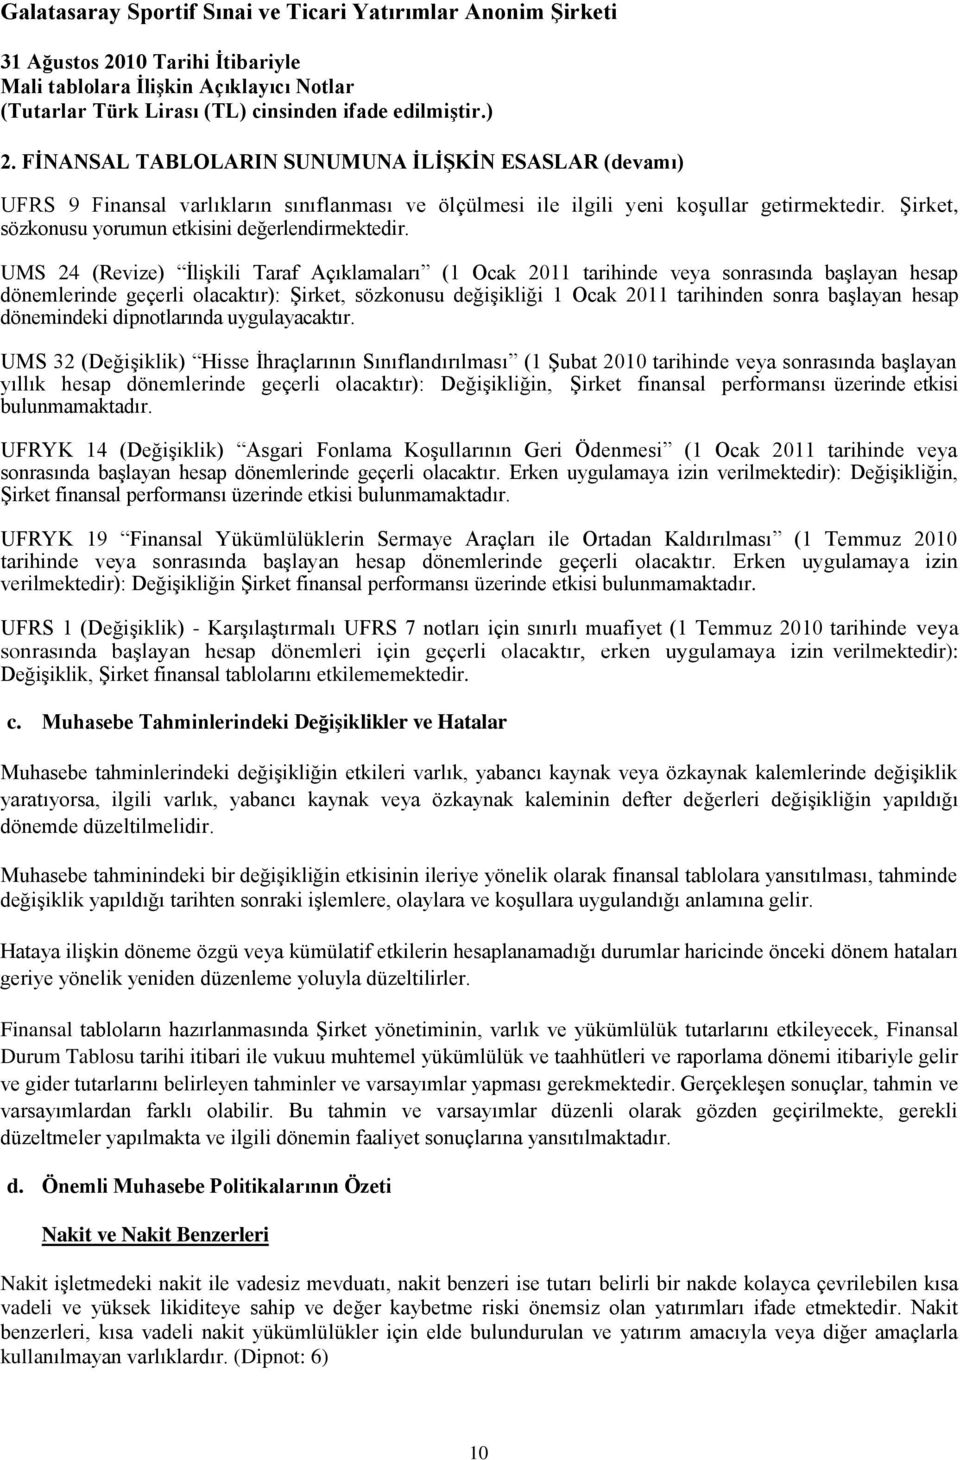 UMS 24 (Revize) ĠliĢkili Taraf Açıklamaları (1 Ocak 2011 tarihinde veya sonrasında baģlayan hesap dönemlerinde geçerli olacaktır): ġirket, sözkonusu değiģikliği 1 Ocak 2011 tarihinden sonra baģlayan